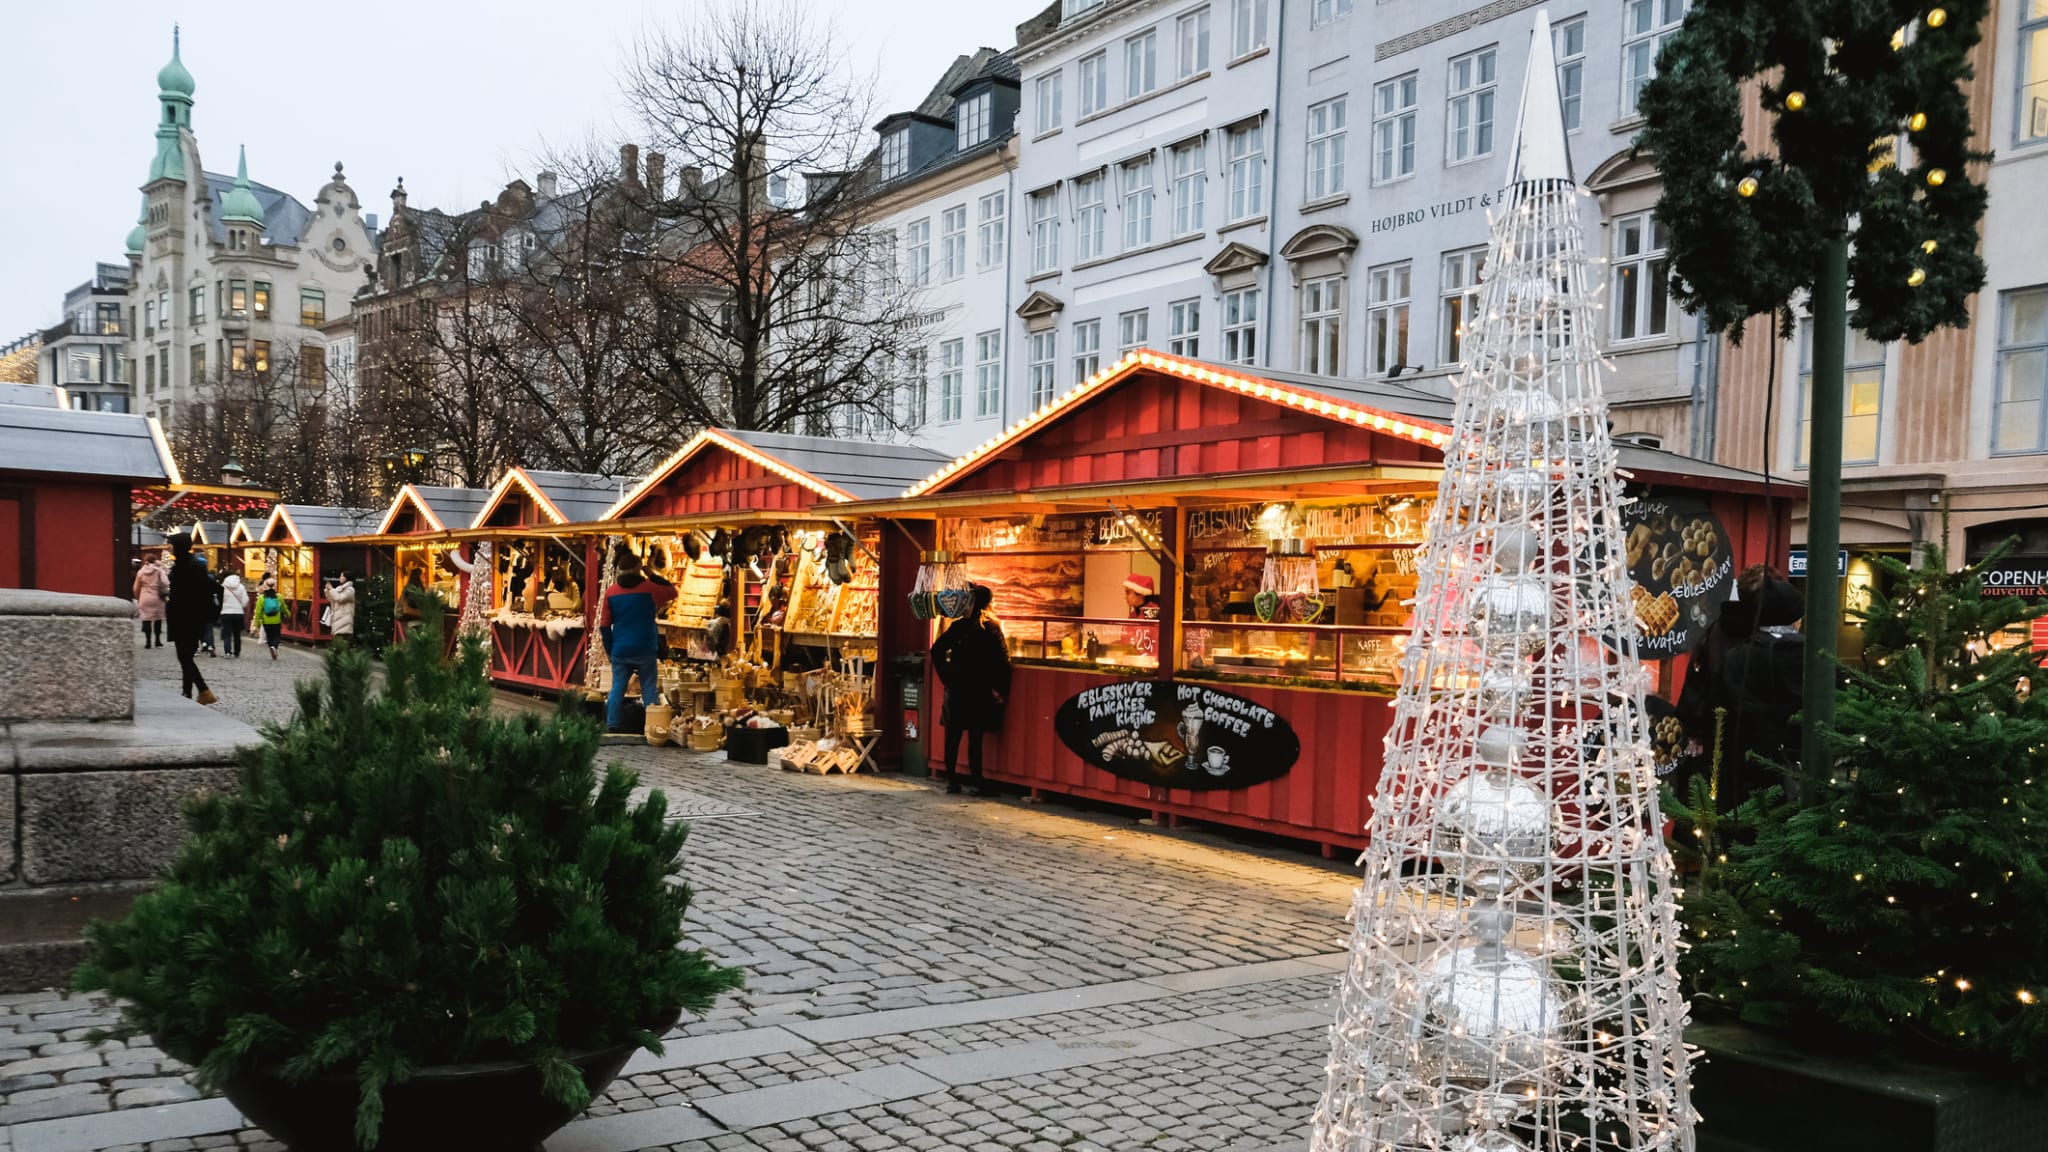 Weihnachtsmarkt in Kopenhagen, Dänemark © Juliet Dreamhunter/iStock Editorial / Getty Images Plus via Getty Images